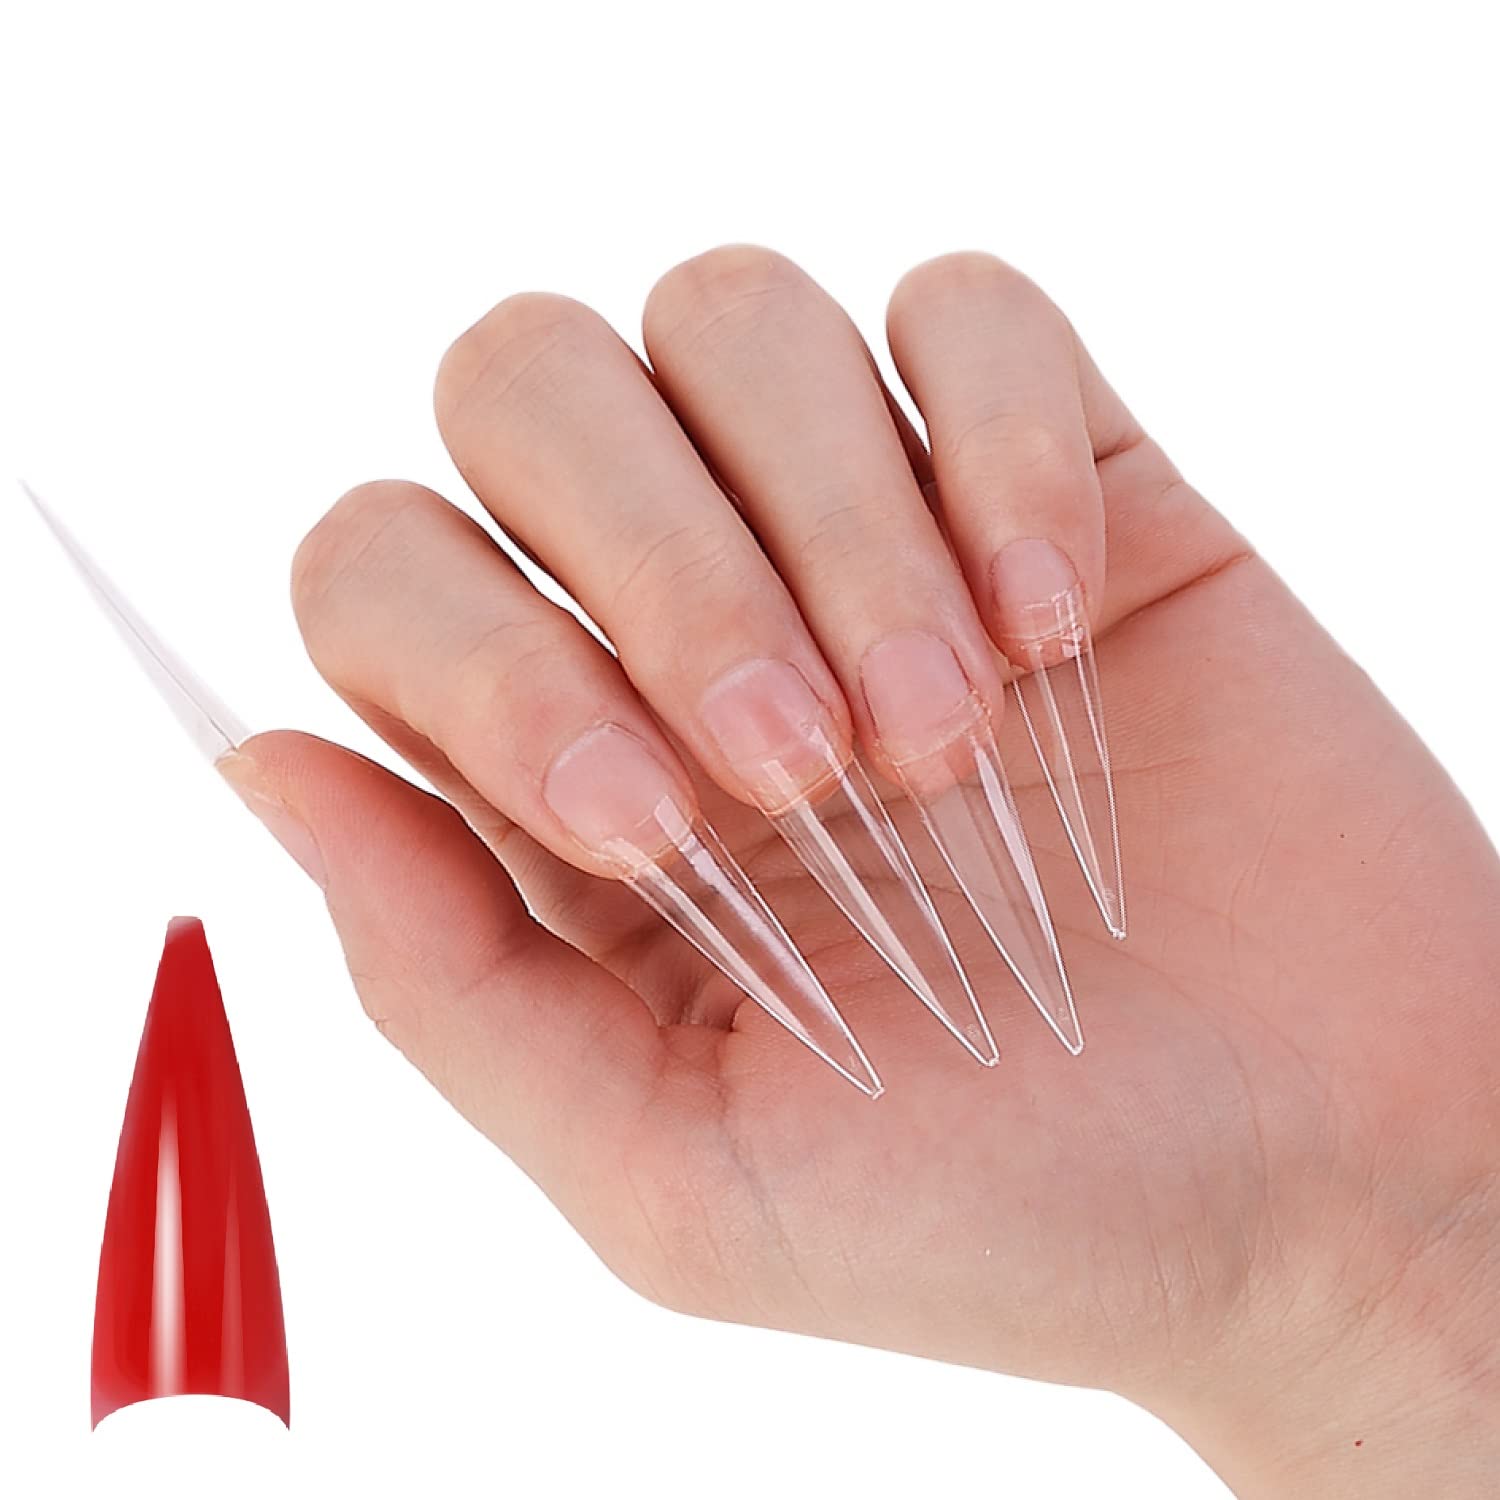 Short Almond Nail Tips, 504pcs Soft Gel Nail Tips, Clear Nail Tips For  Acrylic Nails Professional, Full Cover Almond Nail Tips For Nail Extension,  Fak | Fruugo MY